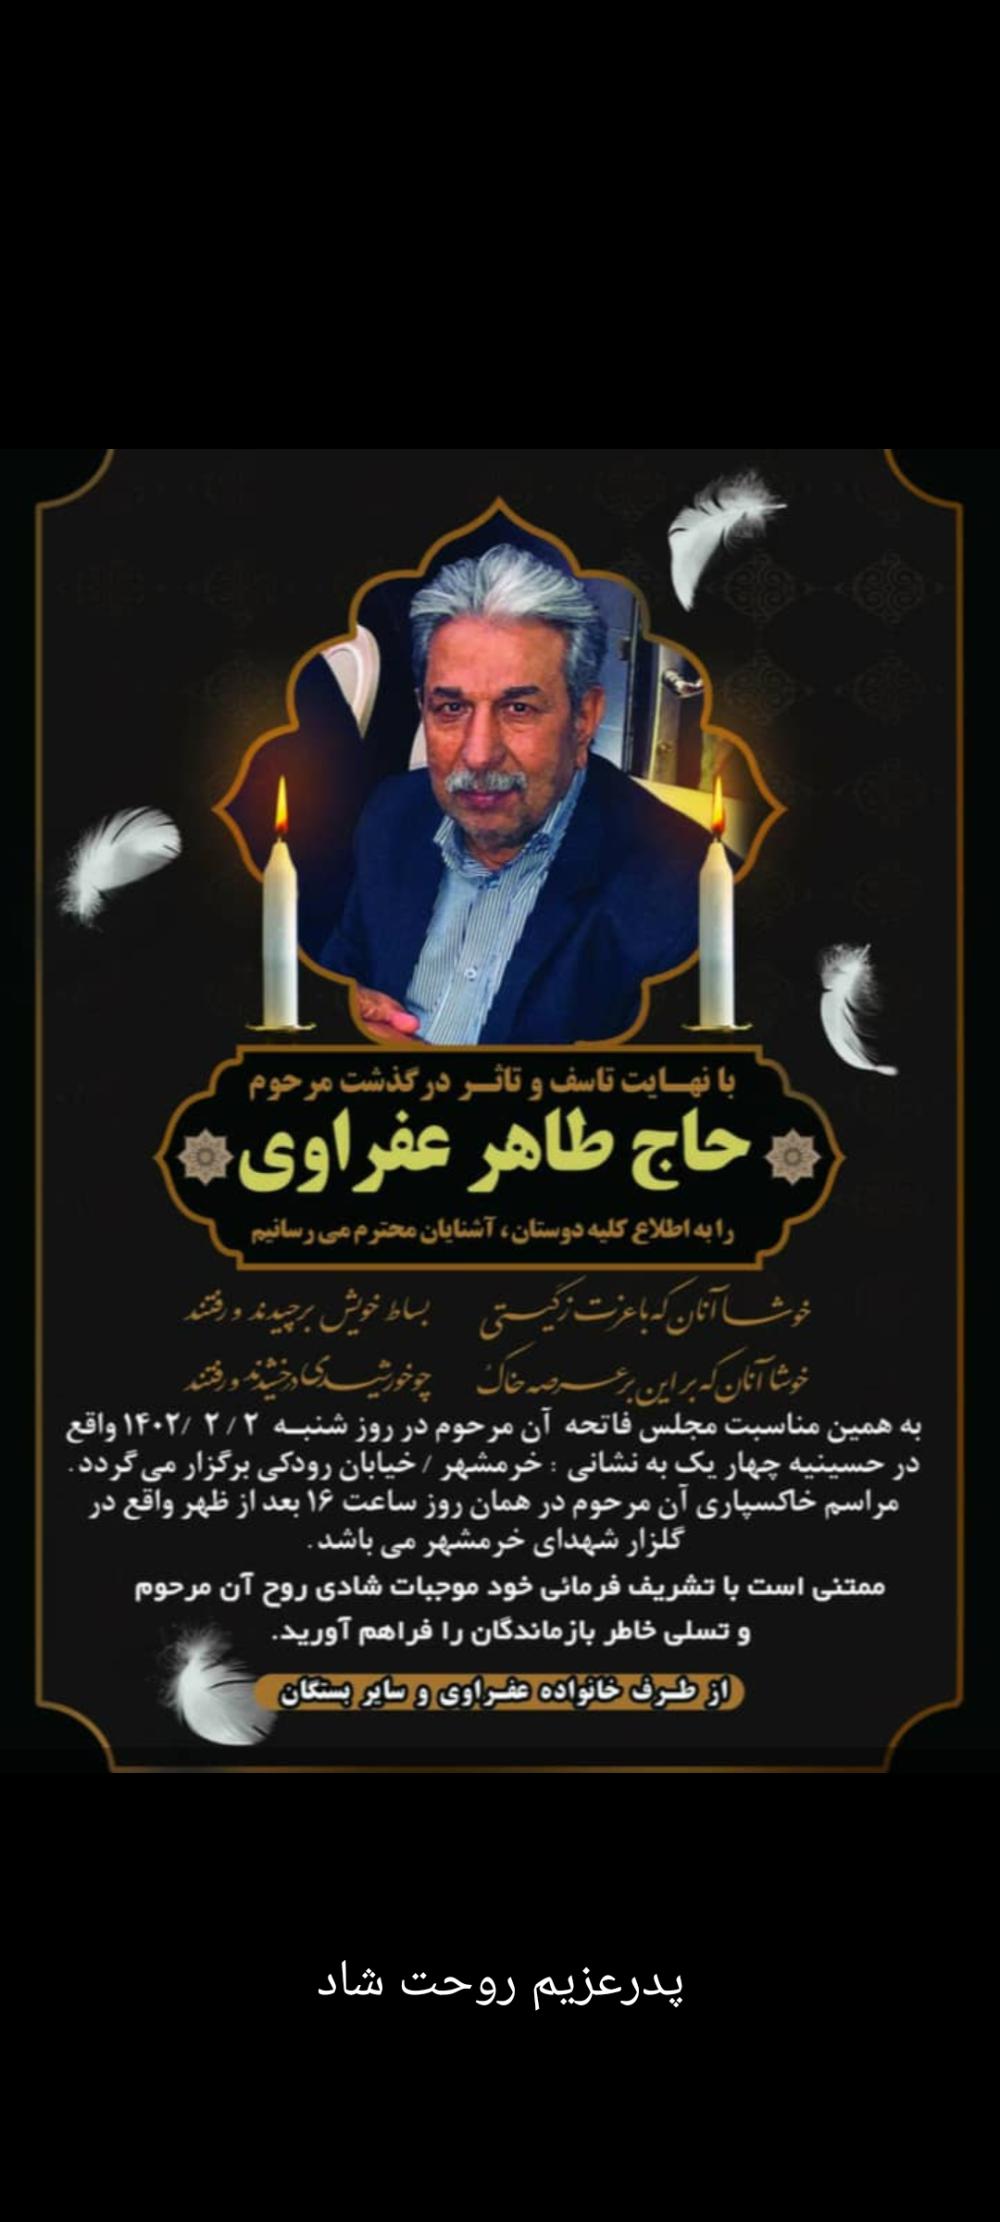 یادبود شادروان حاج طاهر عفراوی